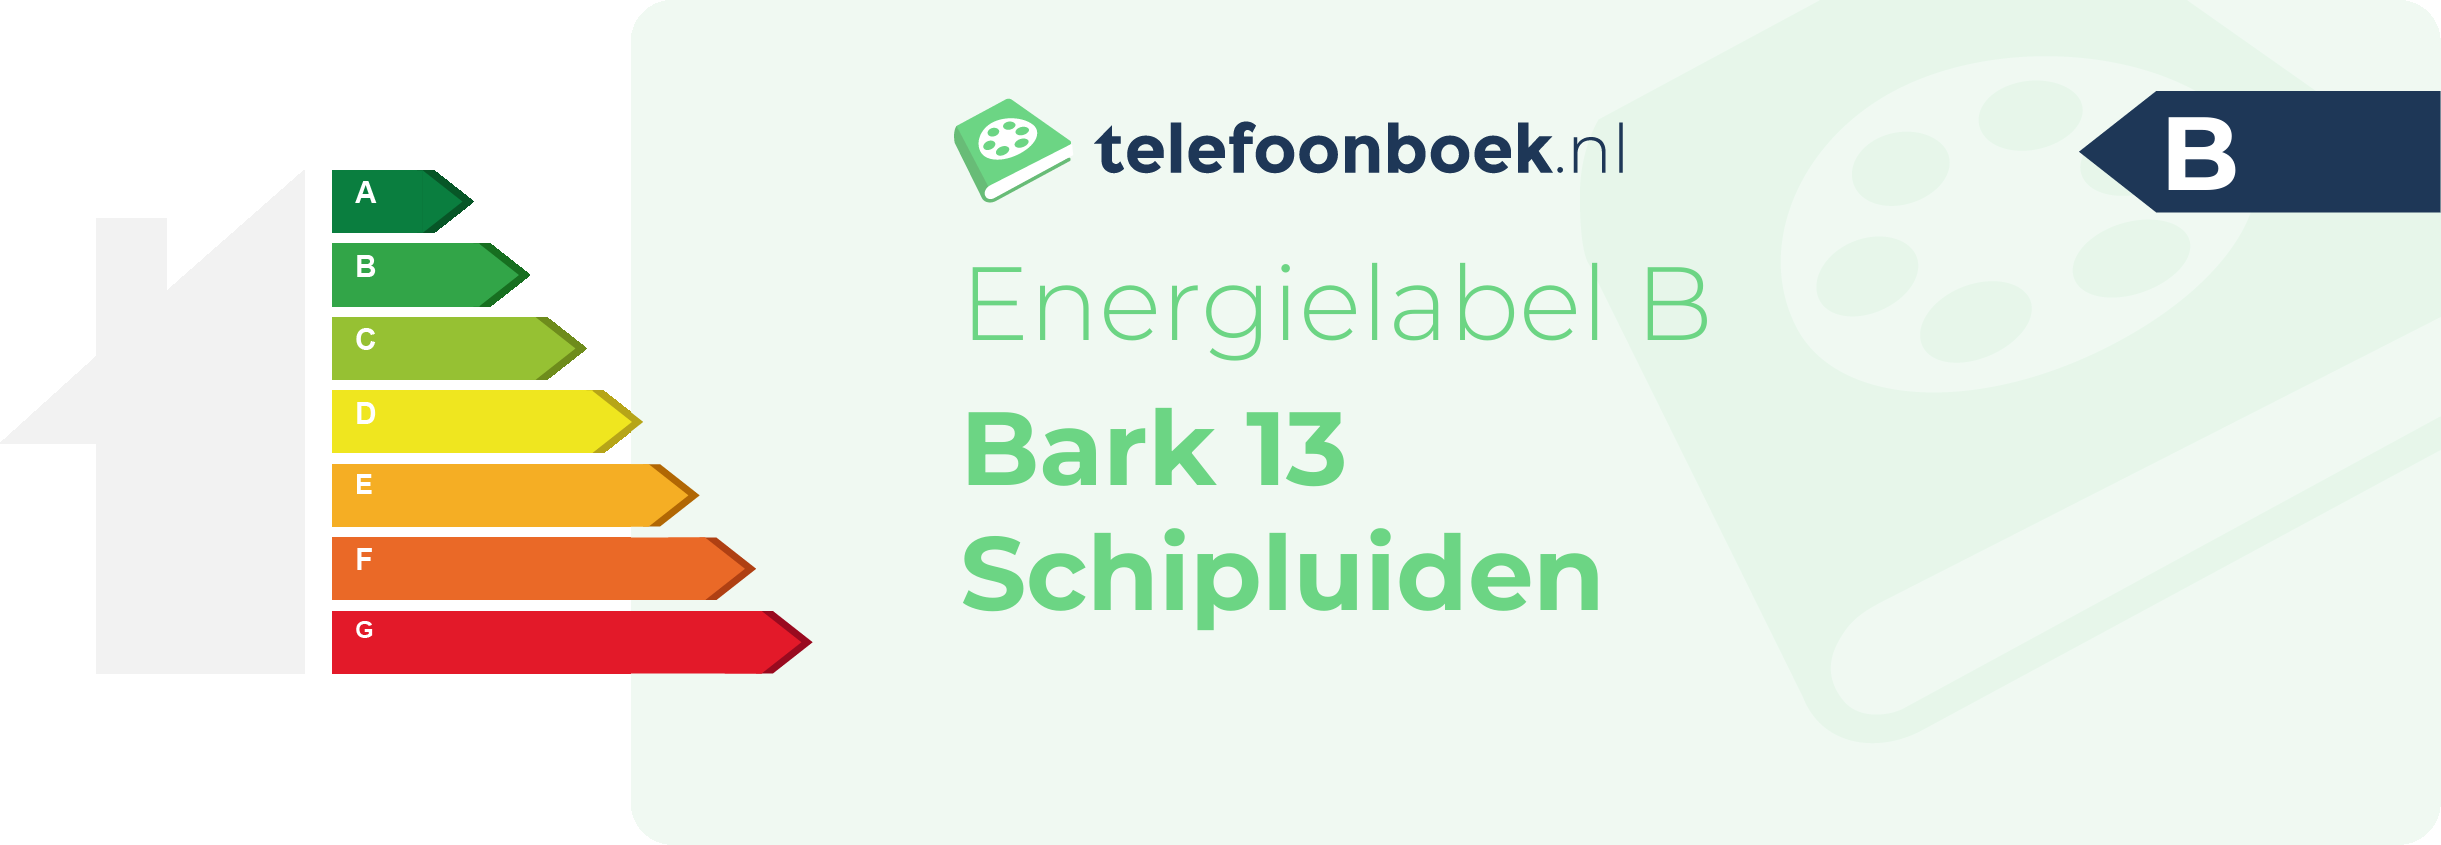 Energielabel Bark 13 Schipluiden